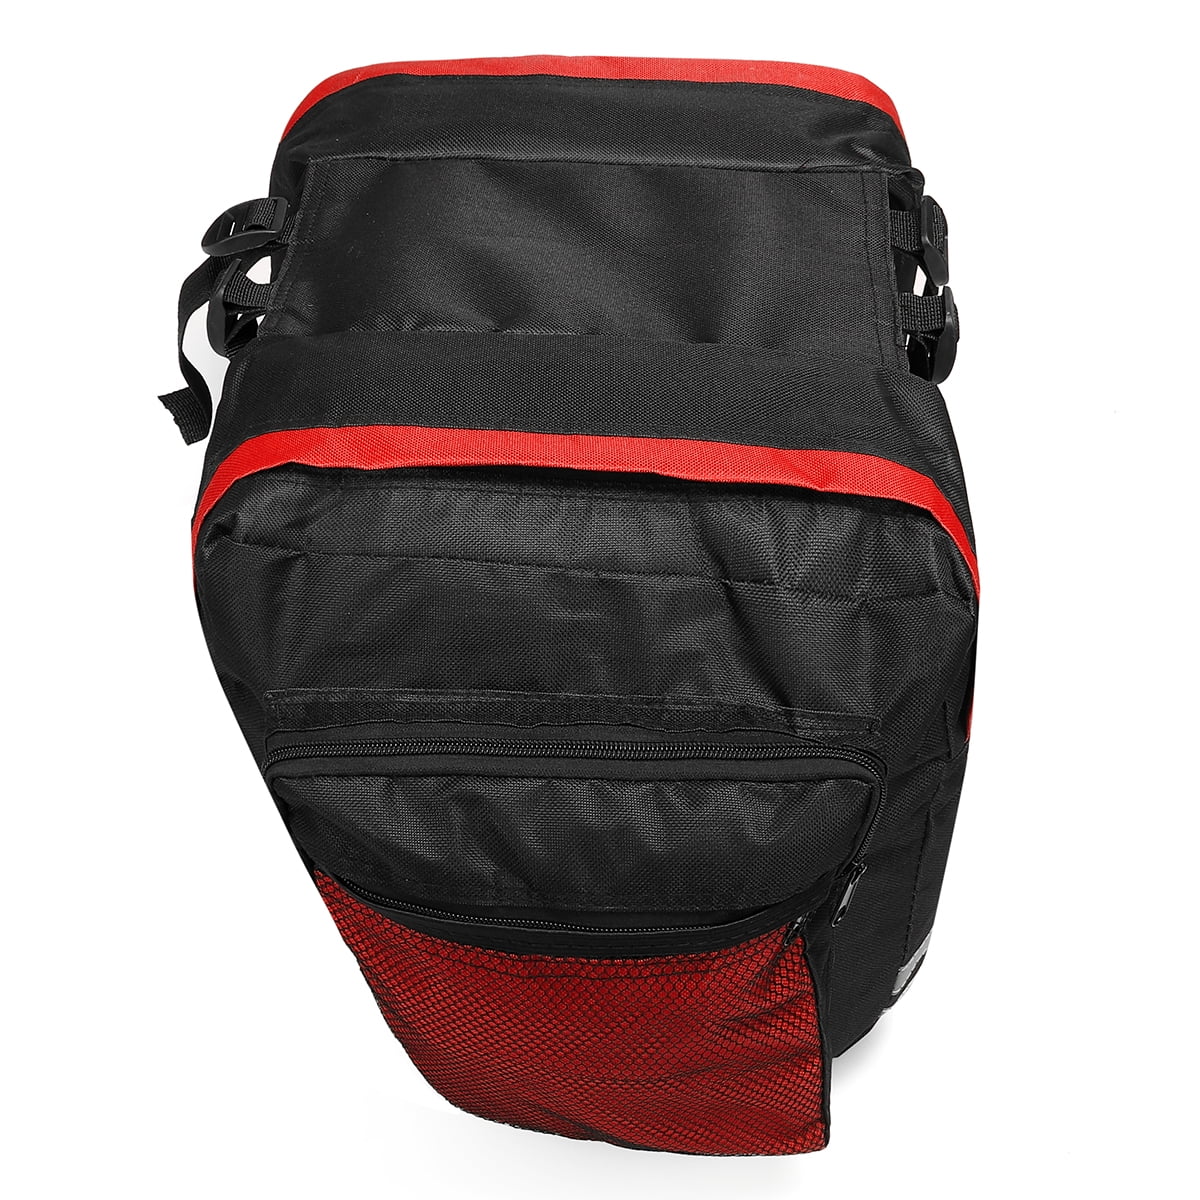 20L Waterproof Bicycle Bike Rear Rack Seat Double Pannier Travel Storage Bags